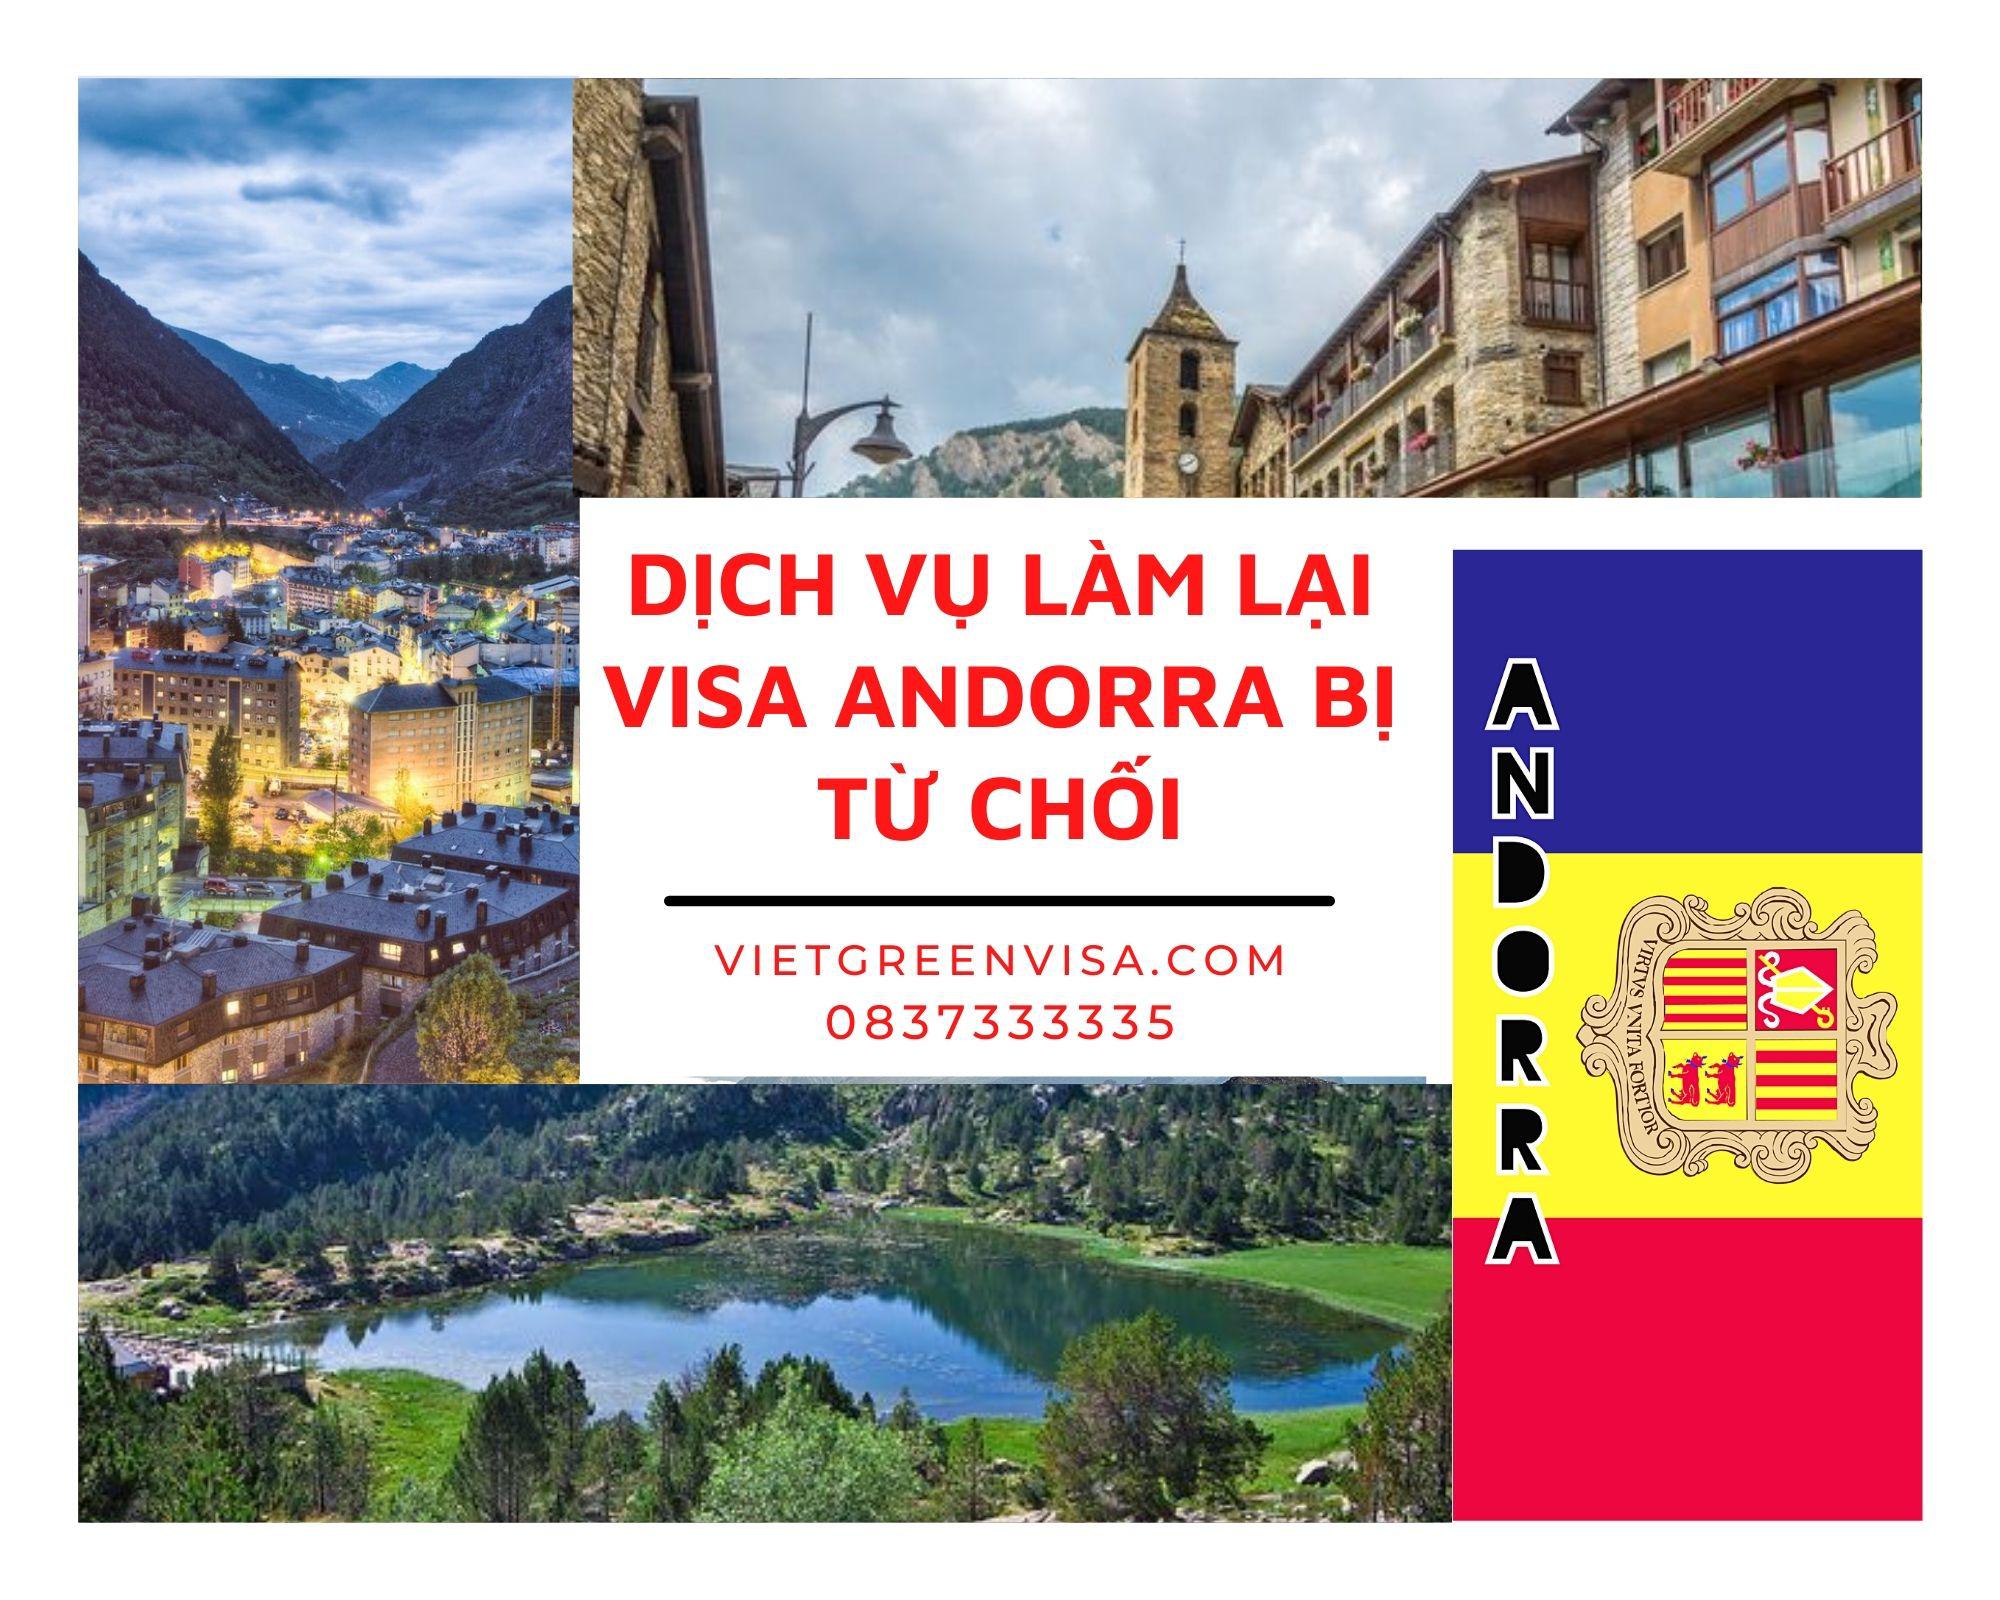 Xử lý visa Andorra bị từ chối nhanh chóng, uy tín